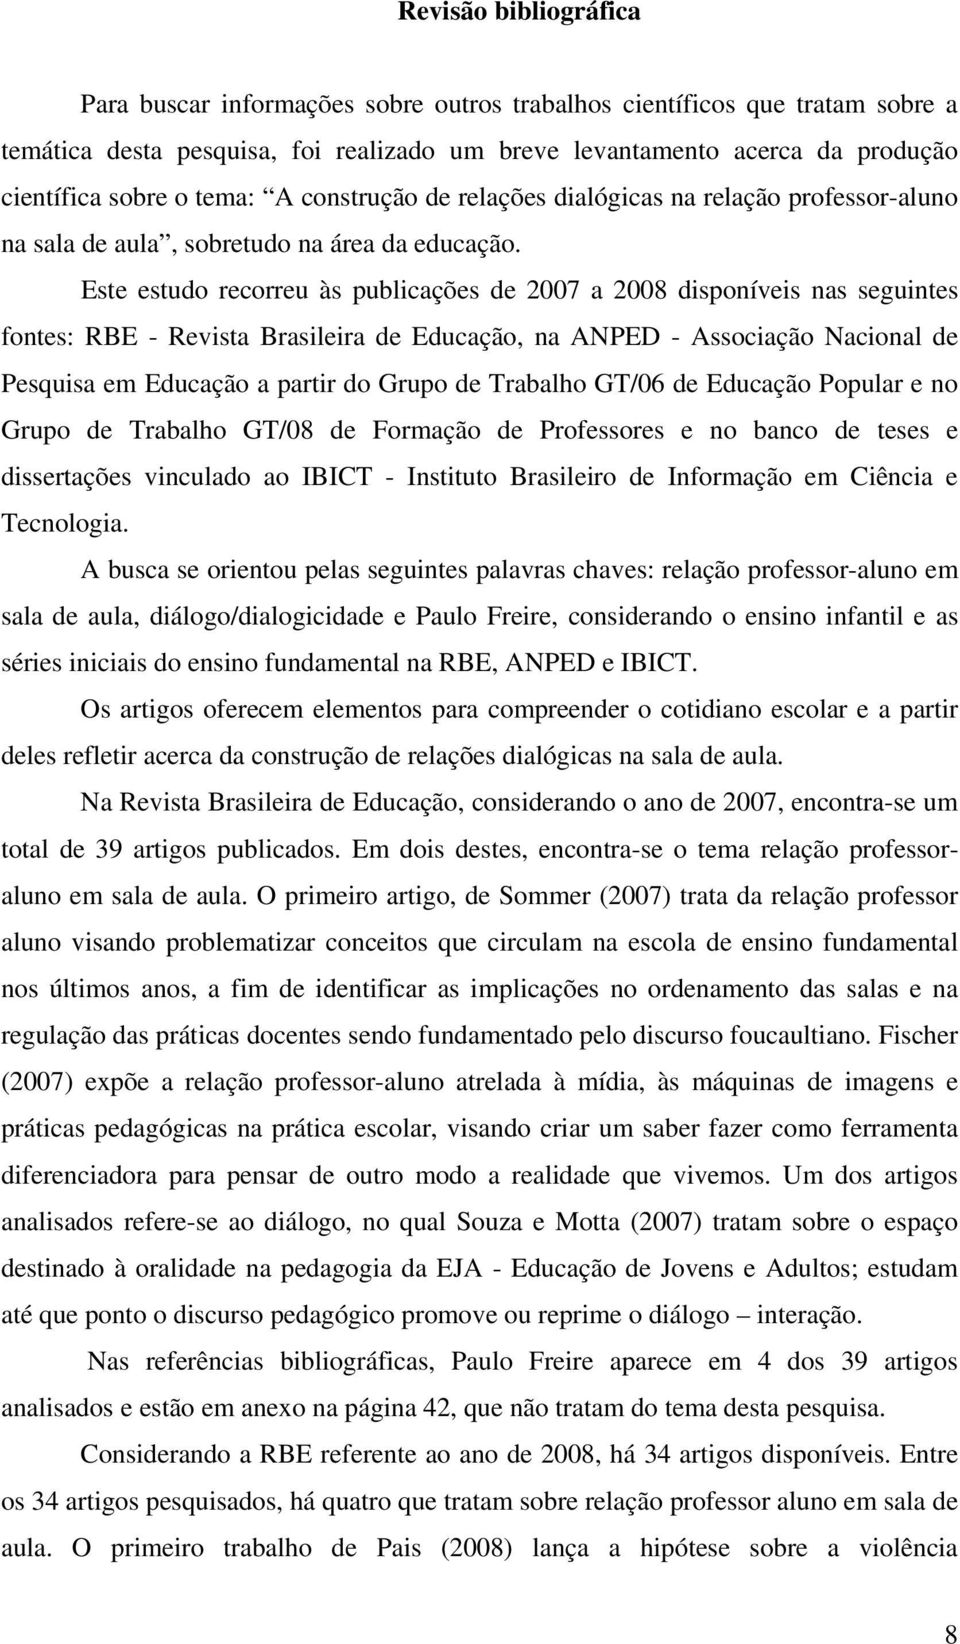 Este estudo recorreu às publicações de 2007 a 2008 disponíveis nas seguintes fontes: RBE - Revista Brasileira de Educação, na ANPED - Associação Nacional de Pesquisa em Educação a partir do Grupo de